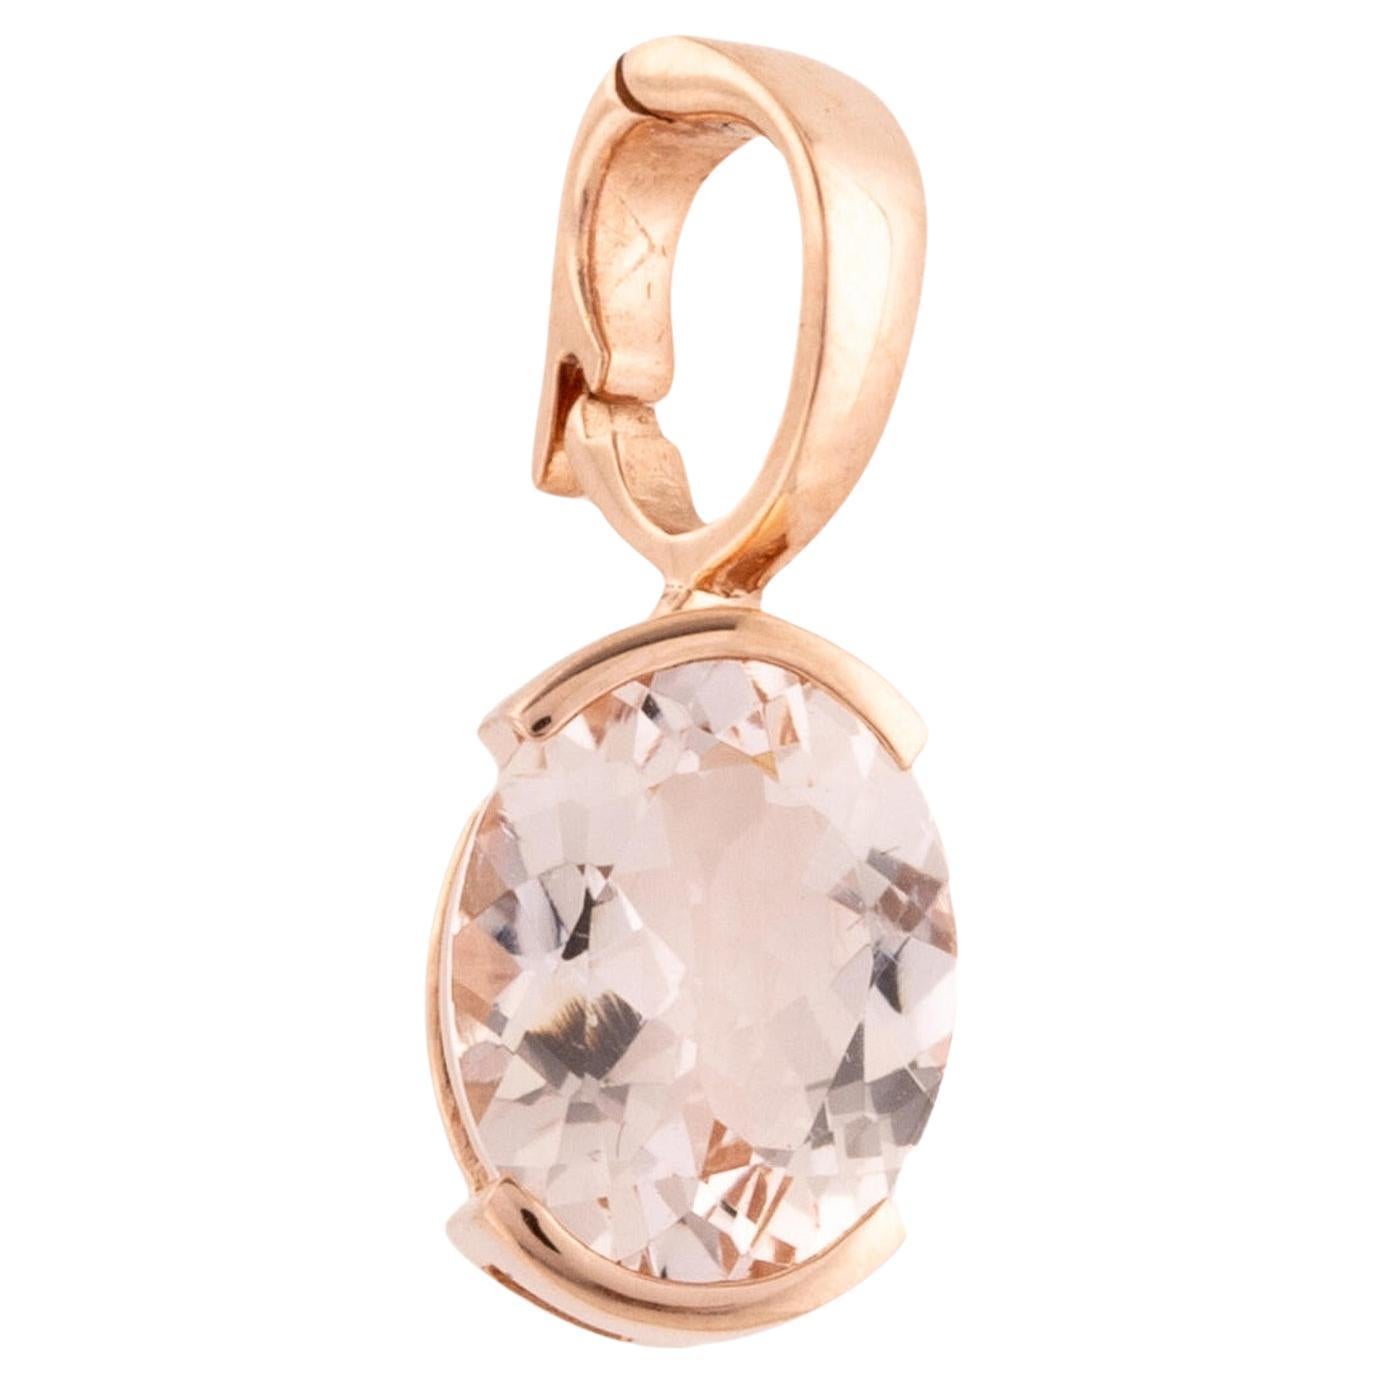 Luxury 14K 2.50ctw Morganite Pendant - Exquisite Gemstone Statement in Rose Gold For Sale